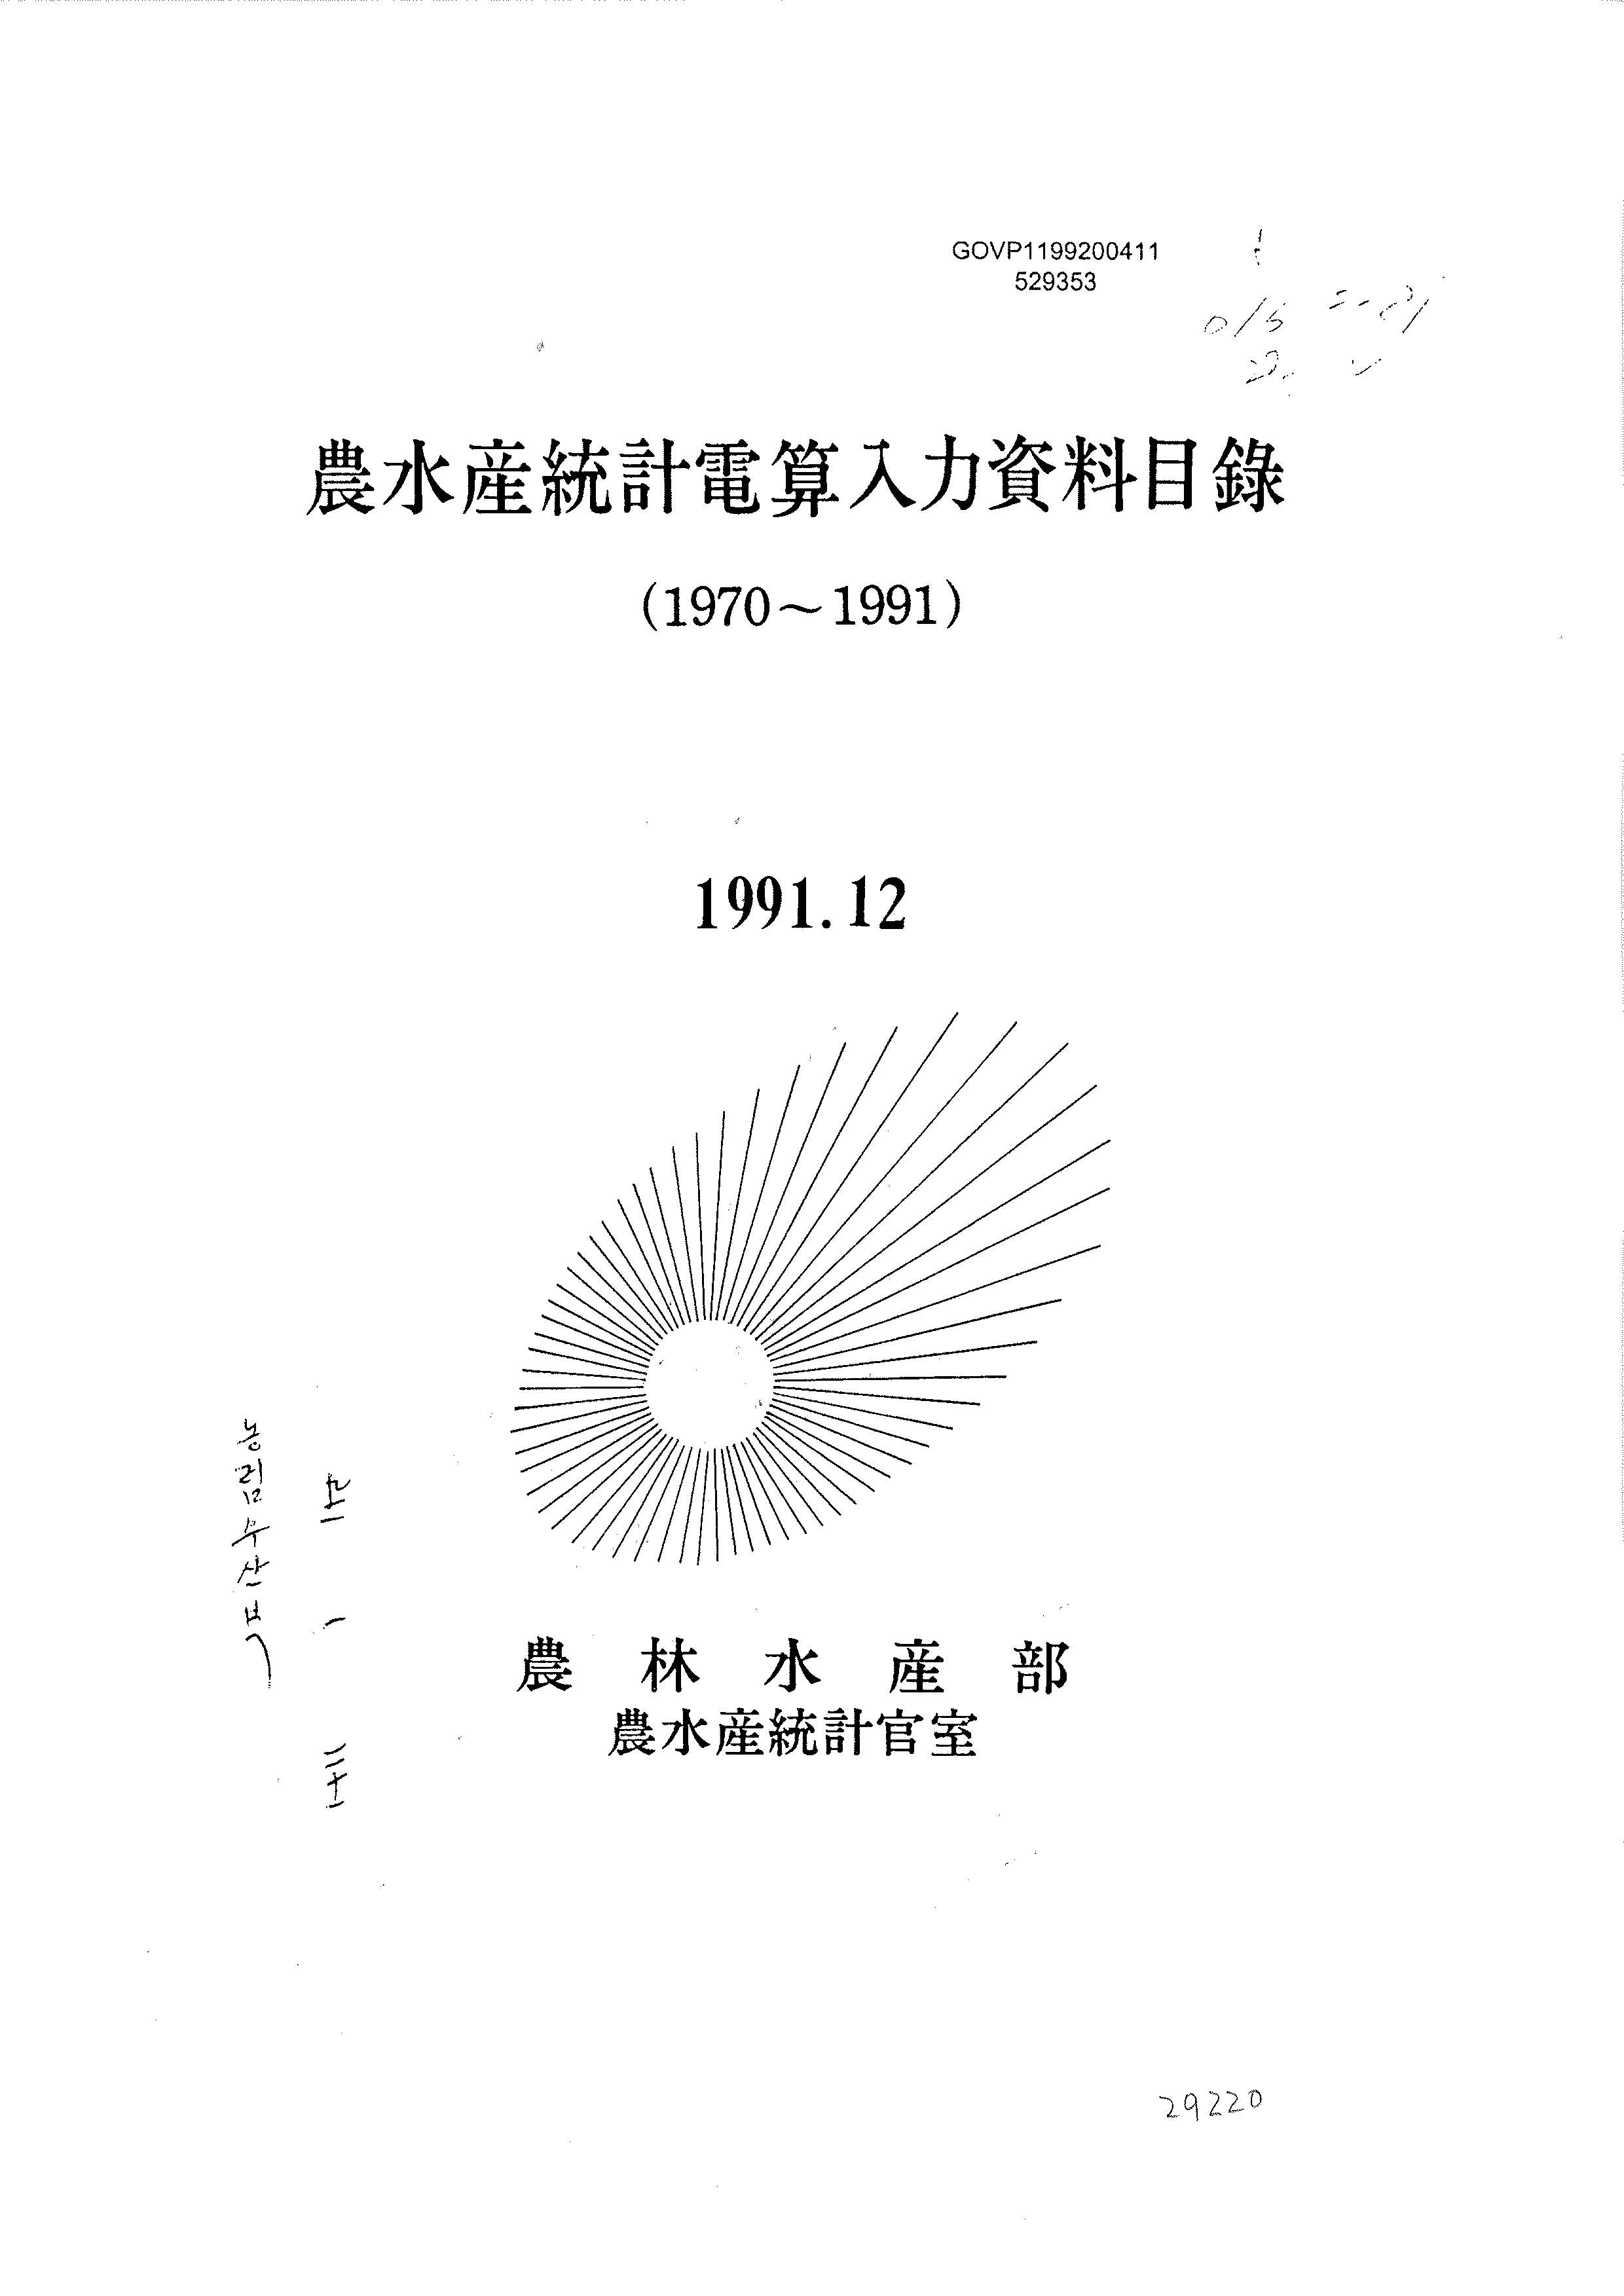 농수산통계전산입력자료목록(1970~1991) / 농림수산부 농수산통계관실 [편]. 1991